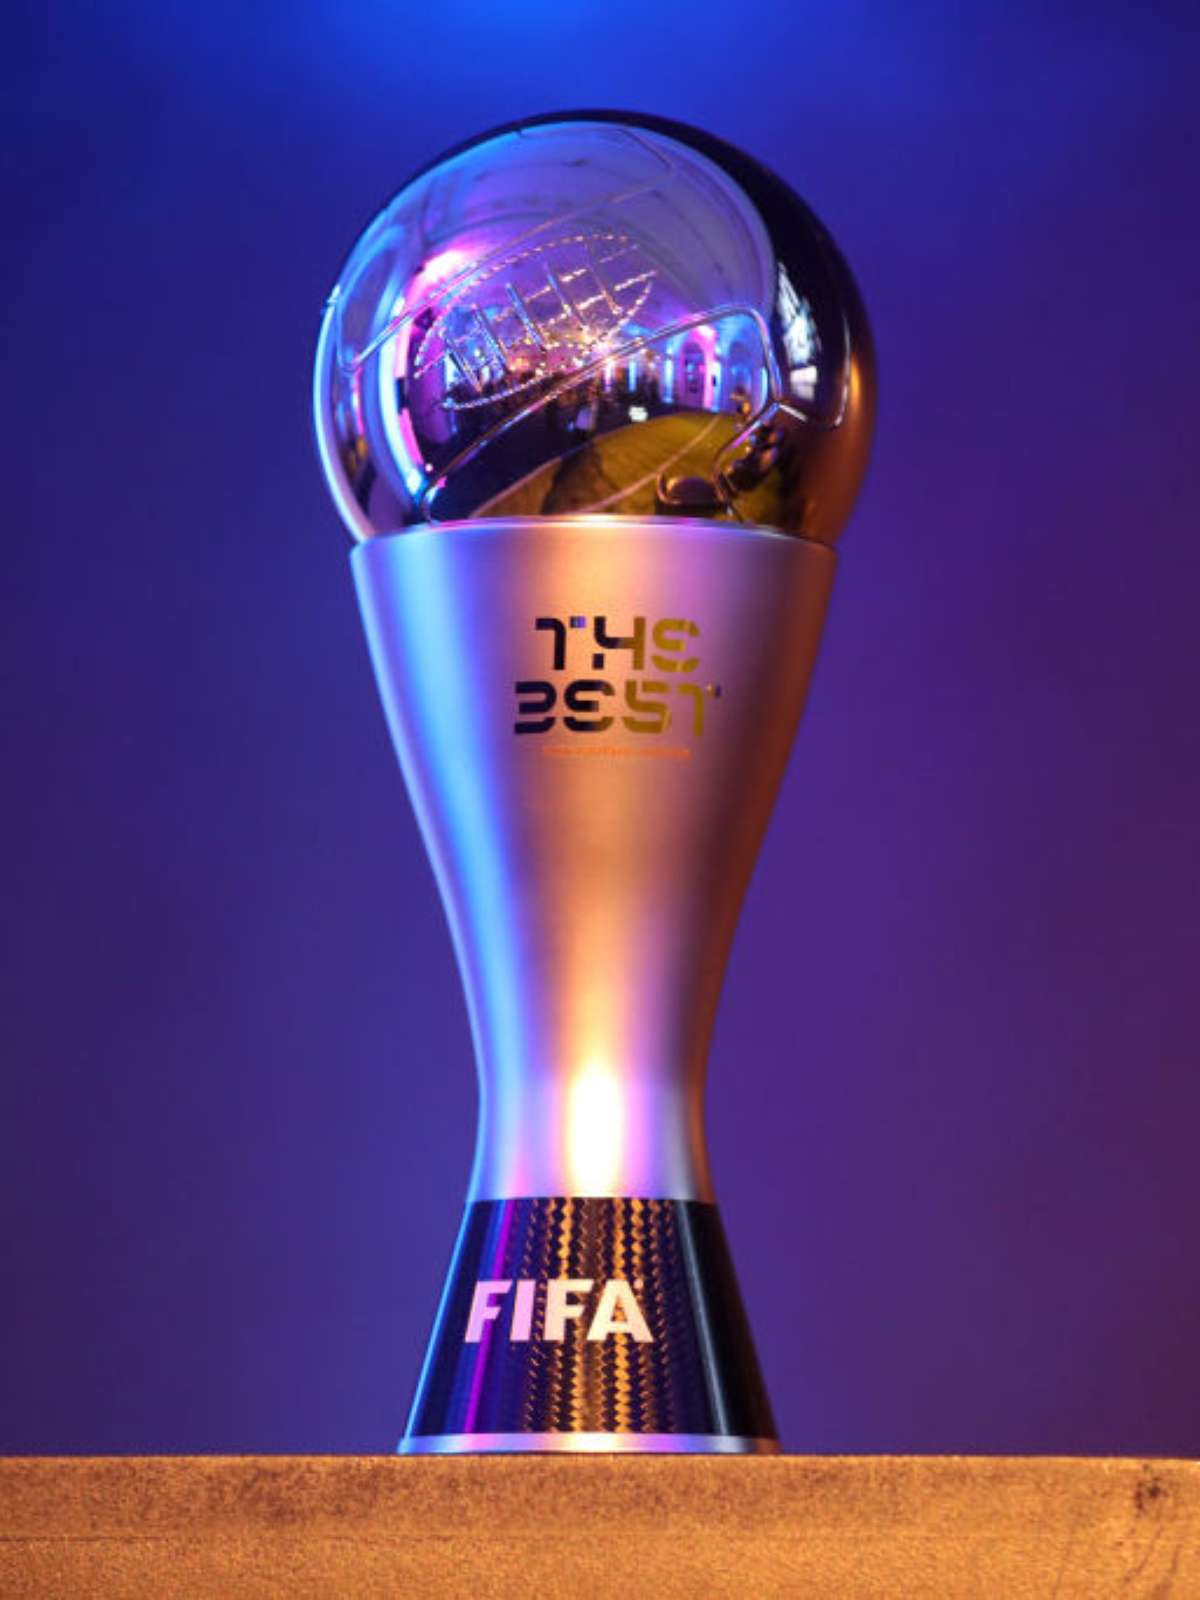 Fifa divulga os finalistas do prêmio de melhor jogador do mundo - Guararema  News